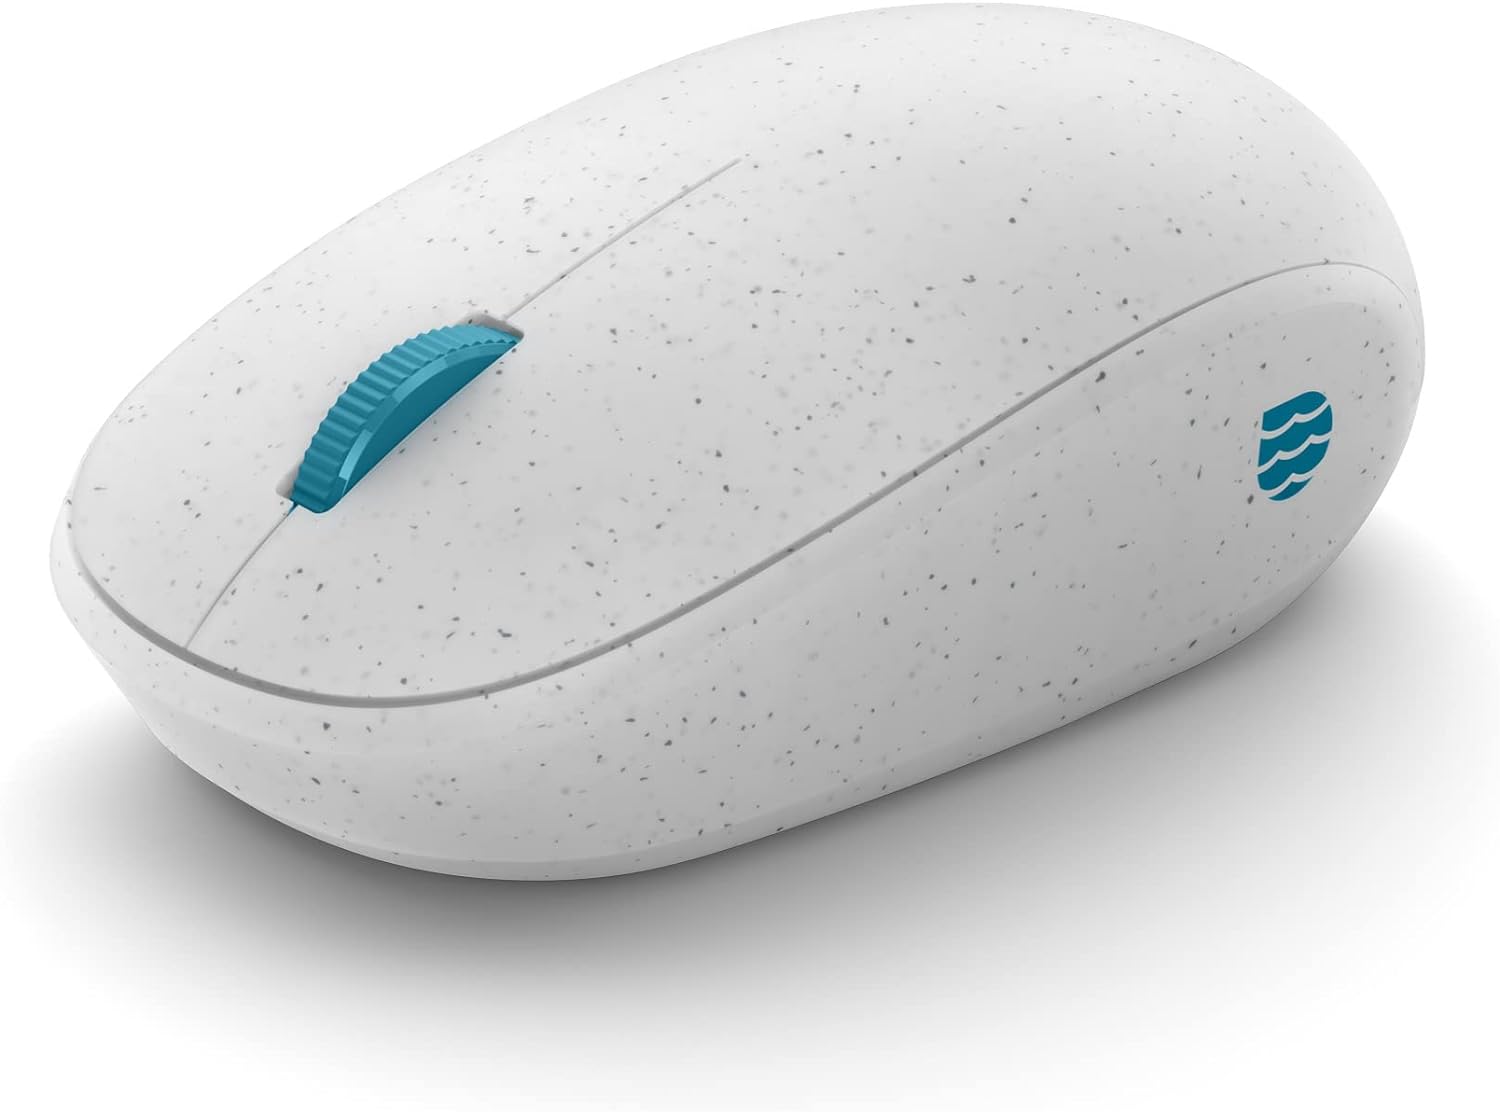 Мышь беспроводная Microsoft Ocean Plastic , 4000dpi, оптическая светодиодная, Bluetooth, белый/синий (I38-00003)